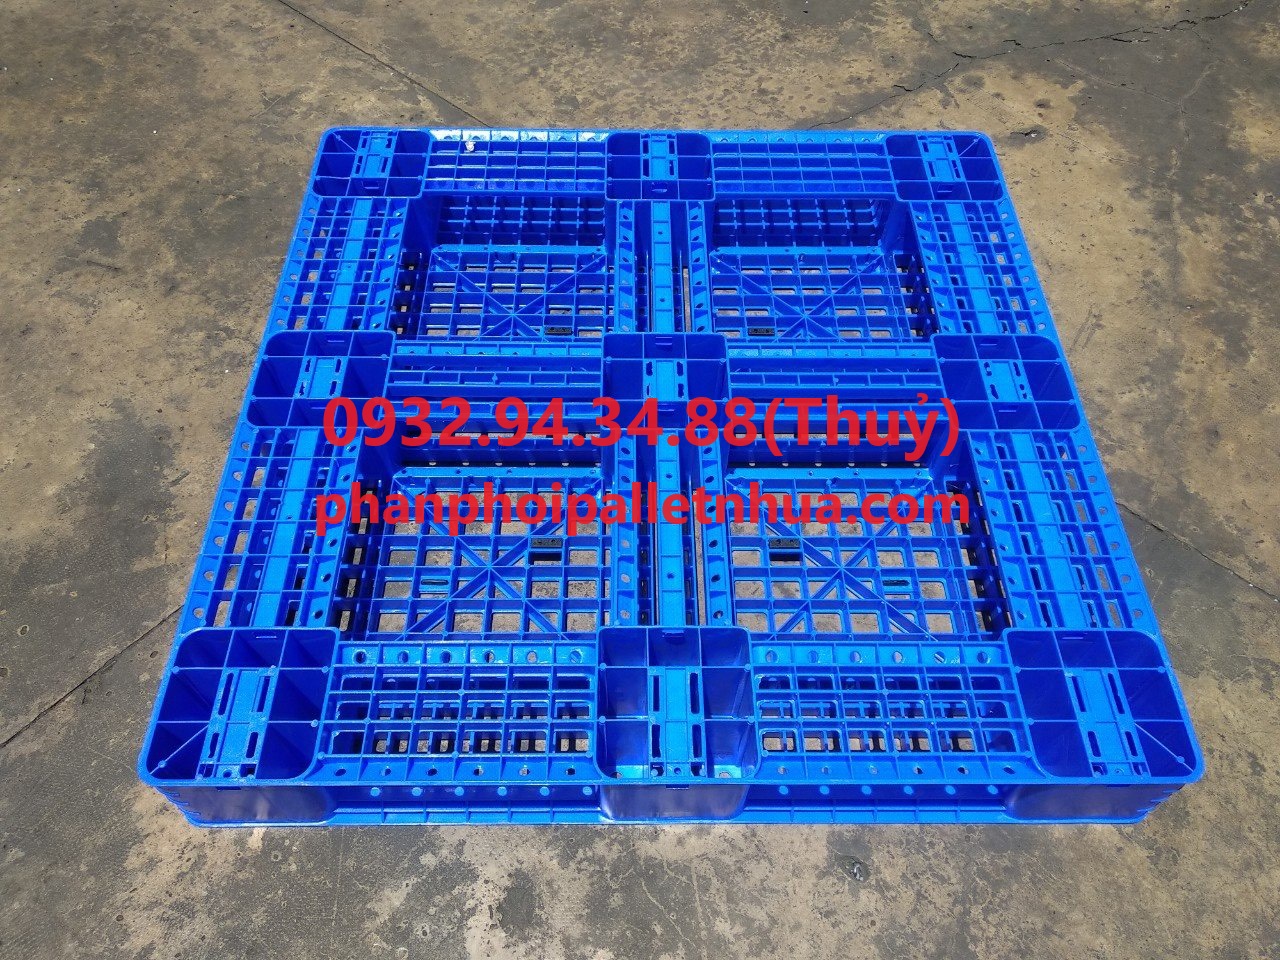 phân phối pallet nhựa cũ tại Bình Phước giá rẻ, liên hệ 0932943488